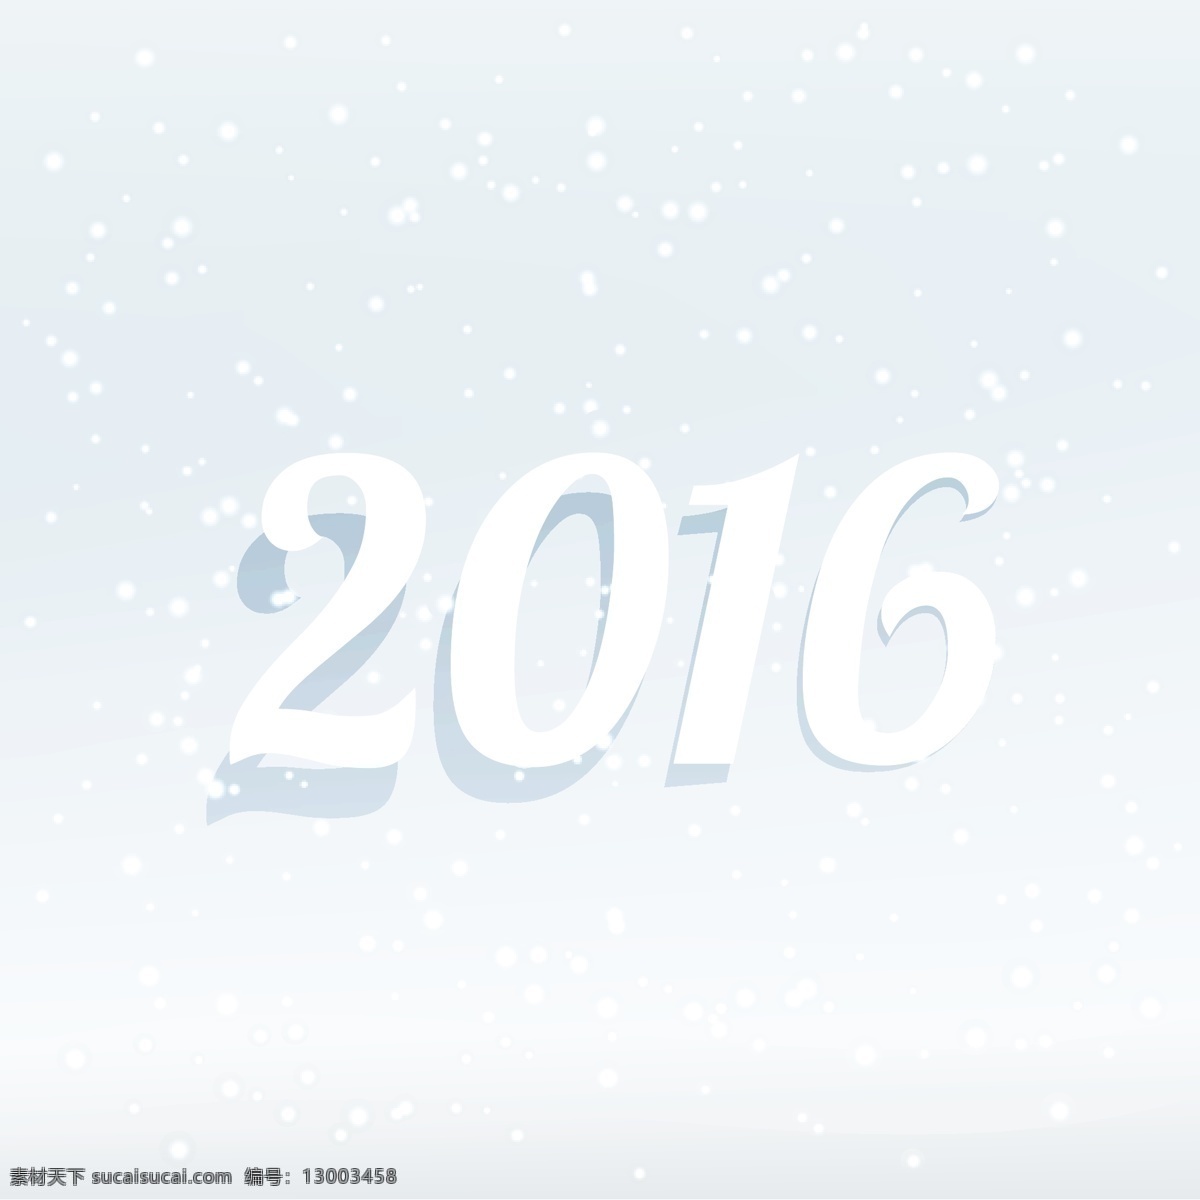 2016 张新 彩色 卡片 背景 海报 新年 新的一年 雪 冬 快乐 壁纸 庆祝 新 事件 假期 年 快乐的假期 冬季背景 愿望 问候 雪背景 白色